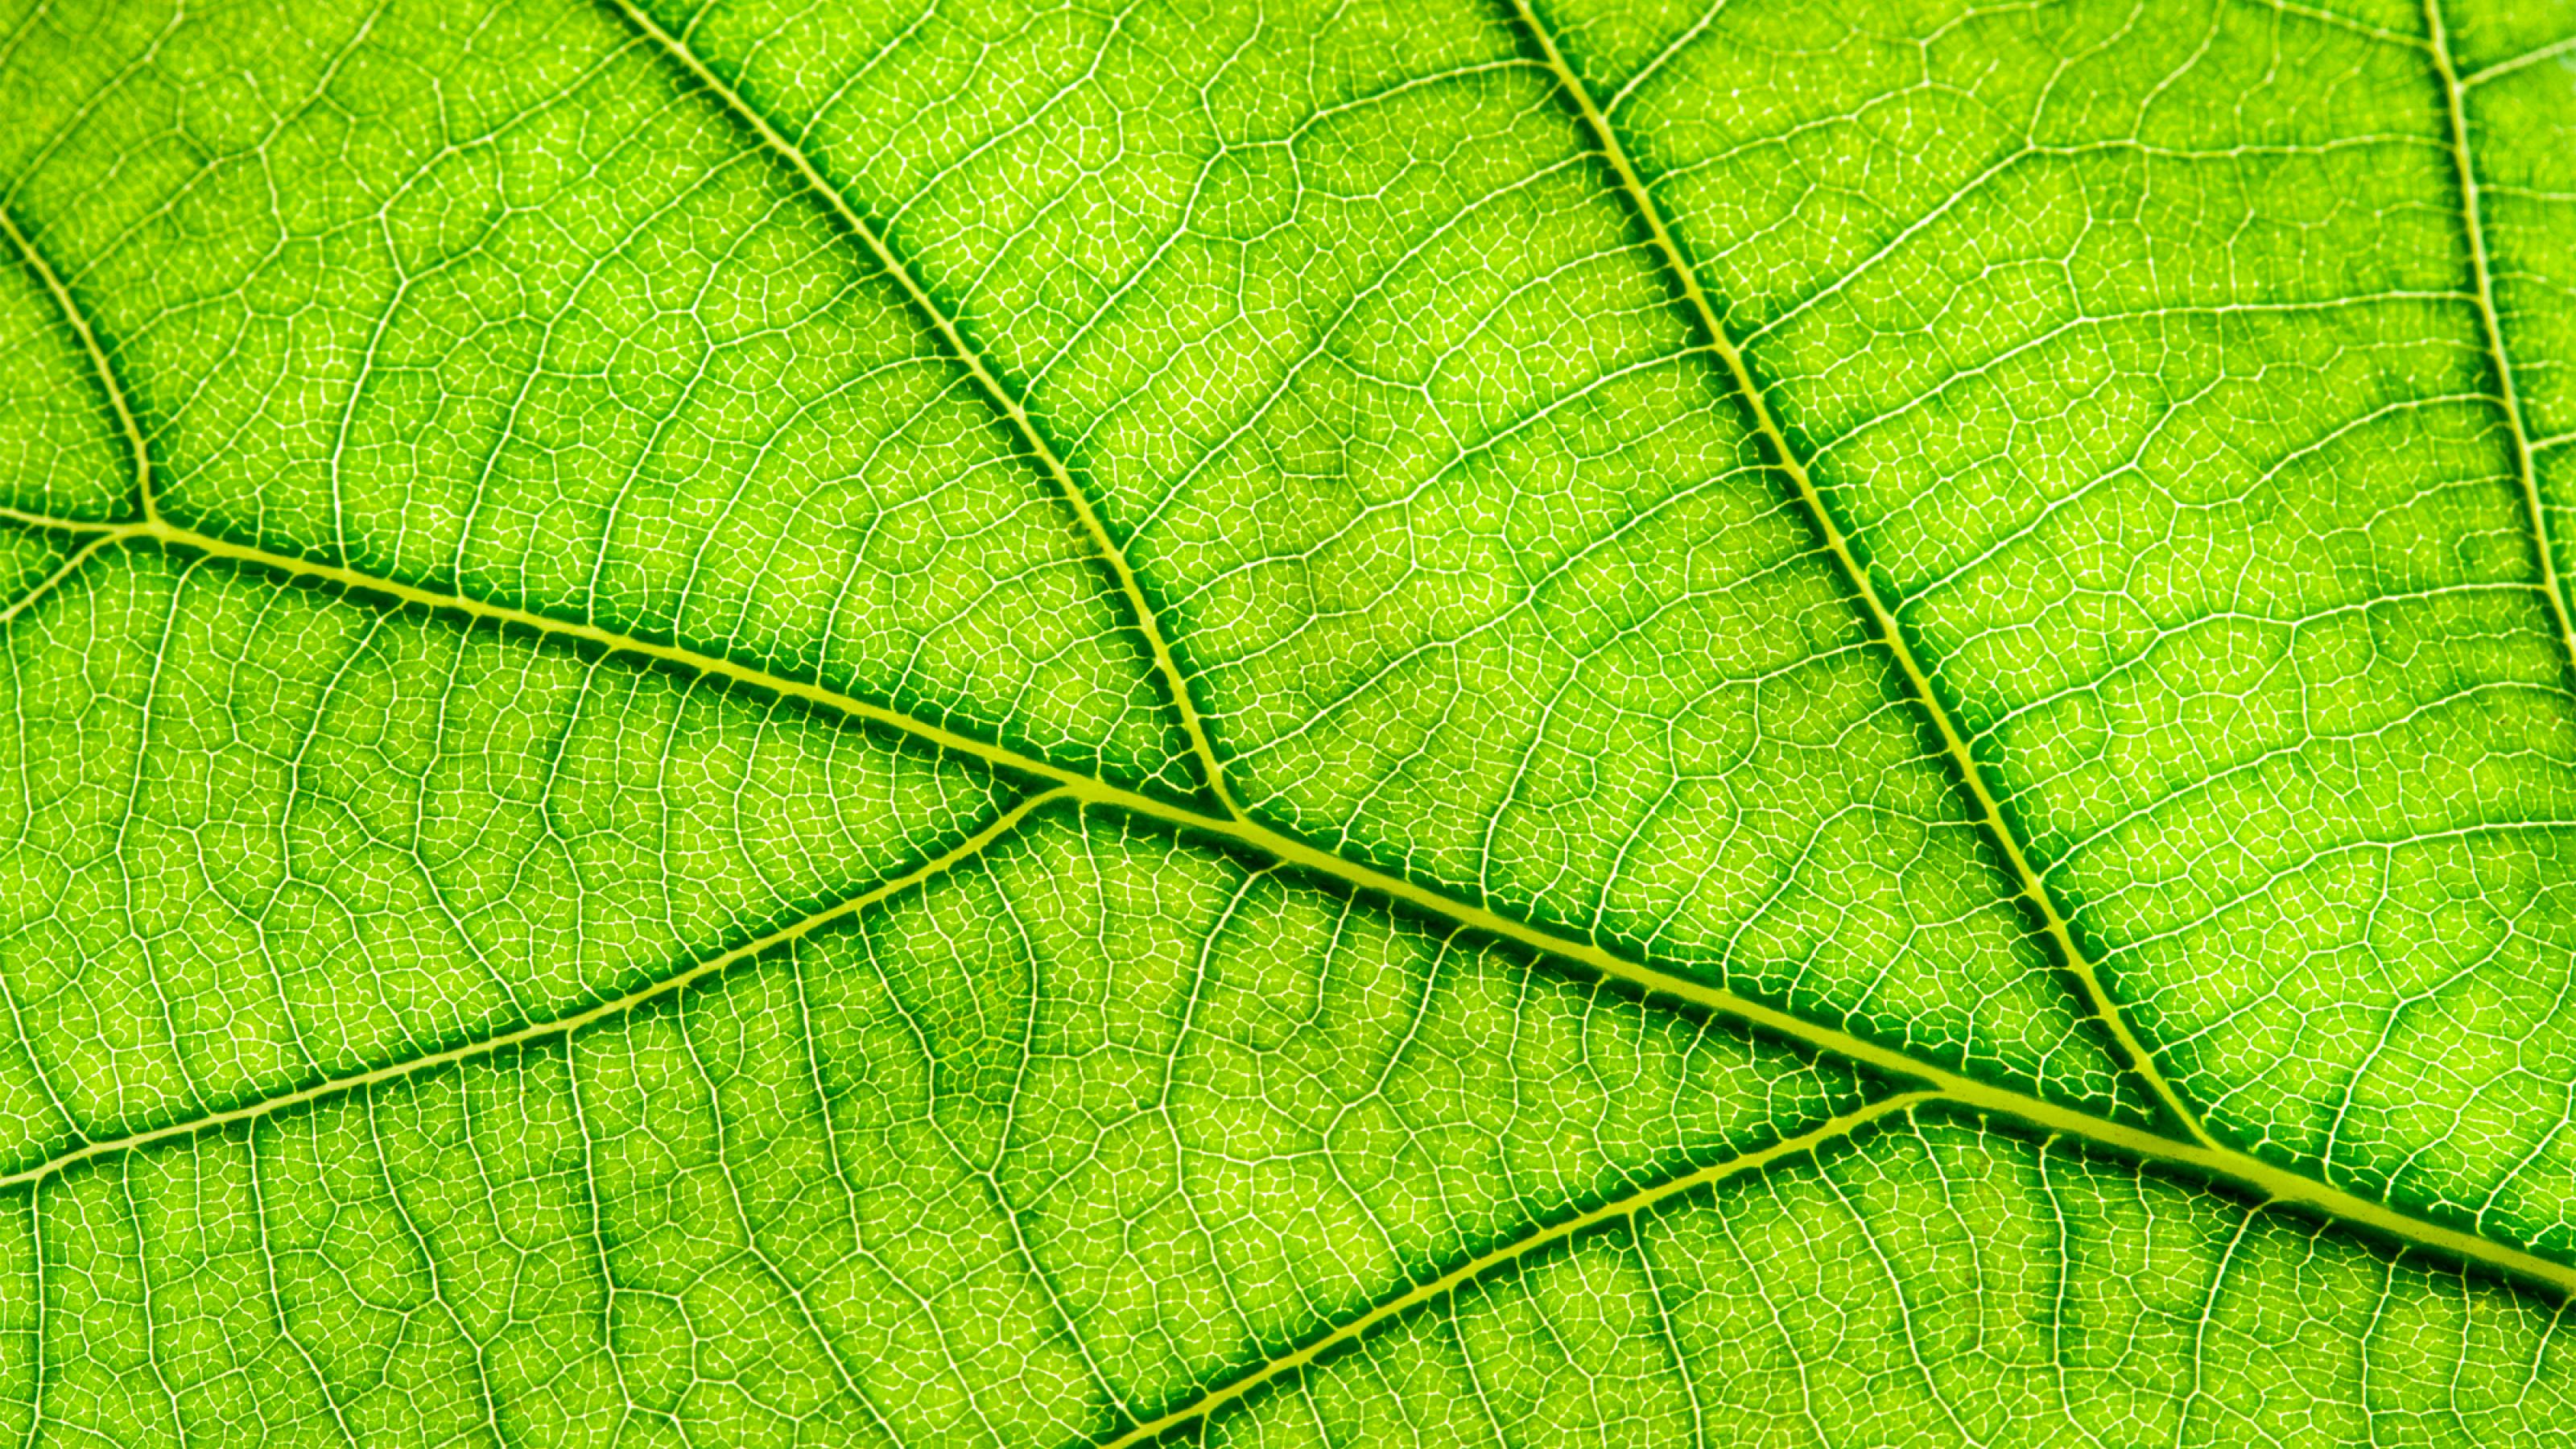 Nahaufnahme eines grünen Blattes, durch das Sonnenlicht scheint und die Blattadern gut sichtbar hervortreten lässt